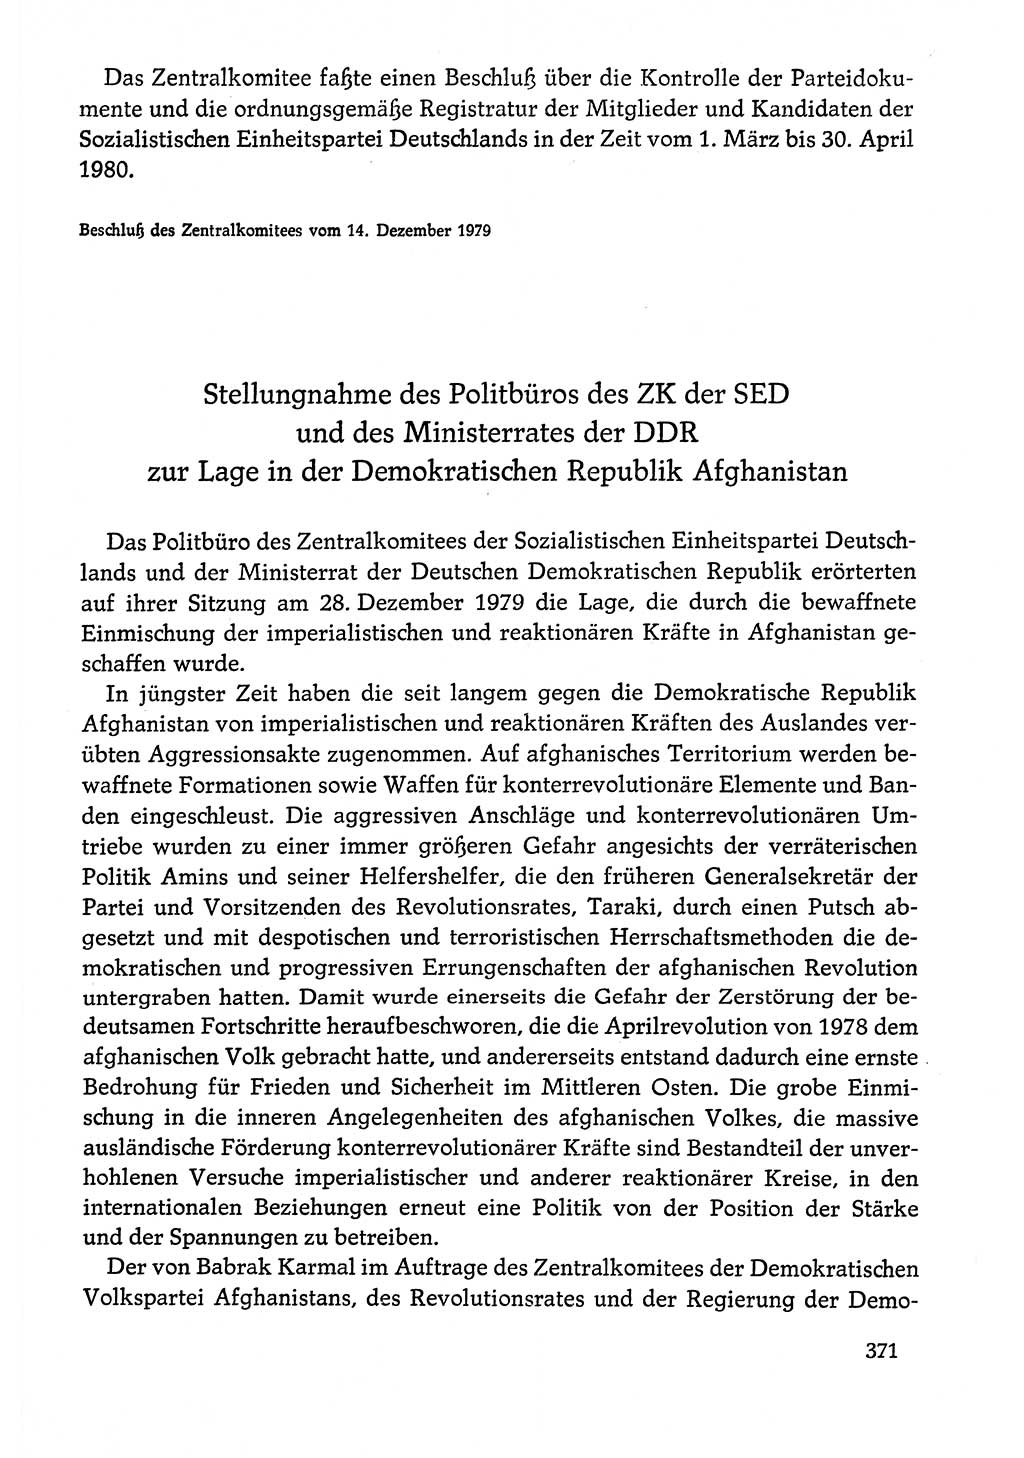 Dokumente der Sozialistischen Einheitspartei Deutschlands (SED) [Deutsche Demokratische Republik (DDR)] 1978-1979, Seite 371 (Dok. SED DDR 1978-1979, S. 371)